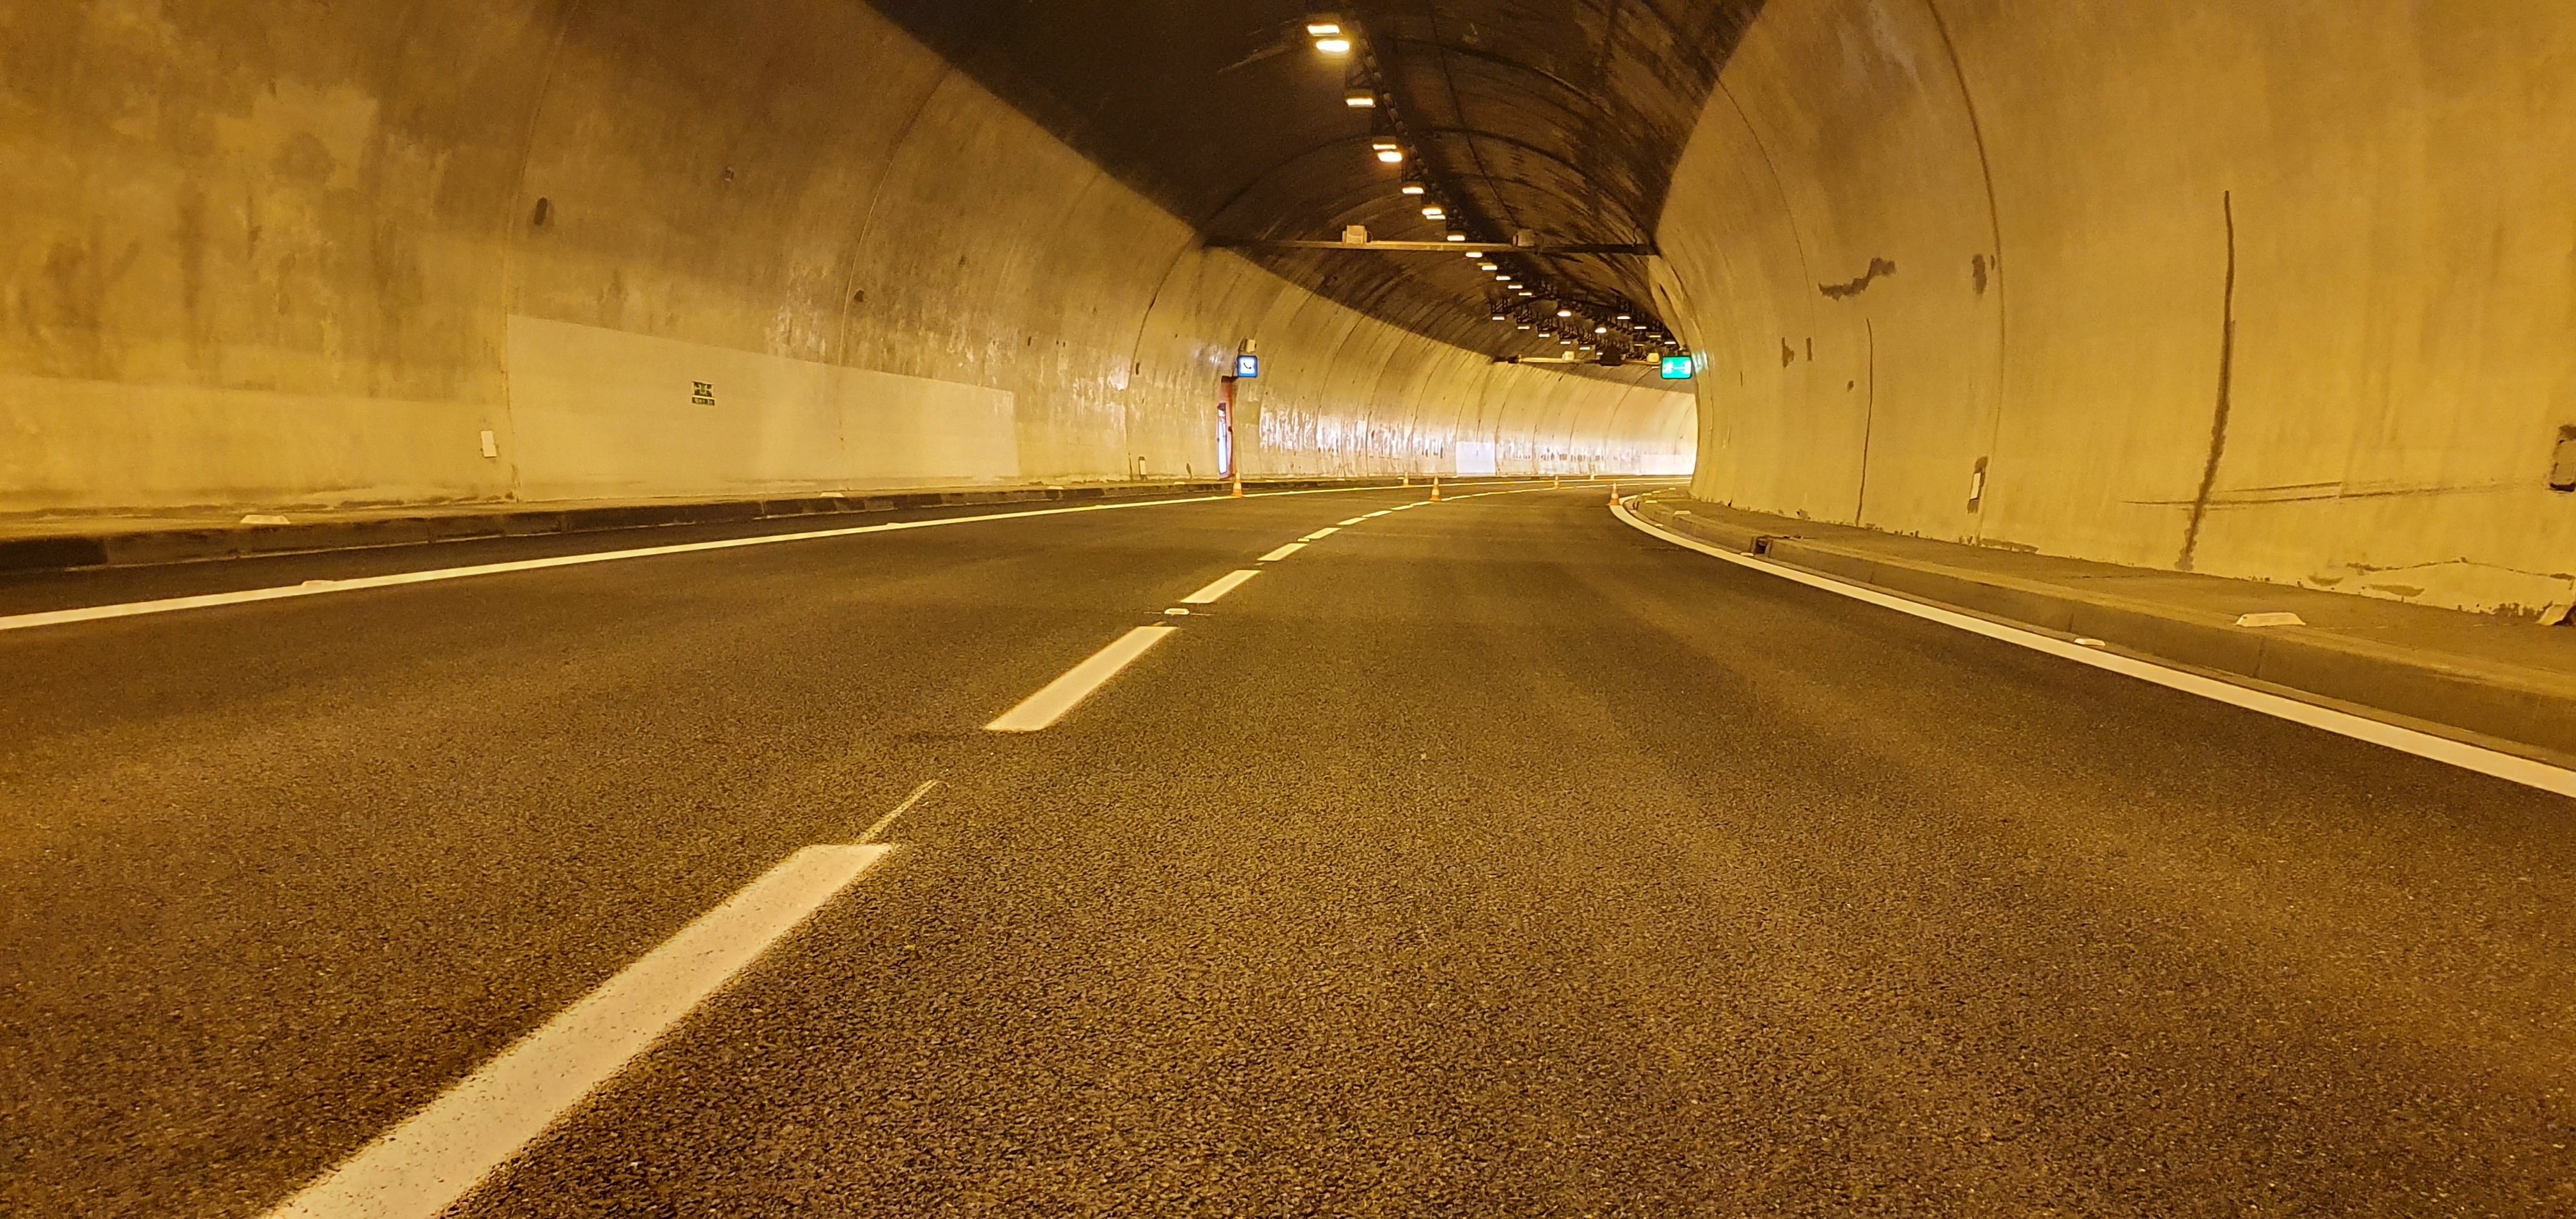 Silnice I/23 – rekonstrukce Pisáreckého tunelu - Budowa dróg i mostów